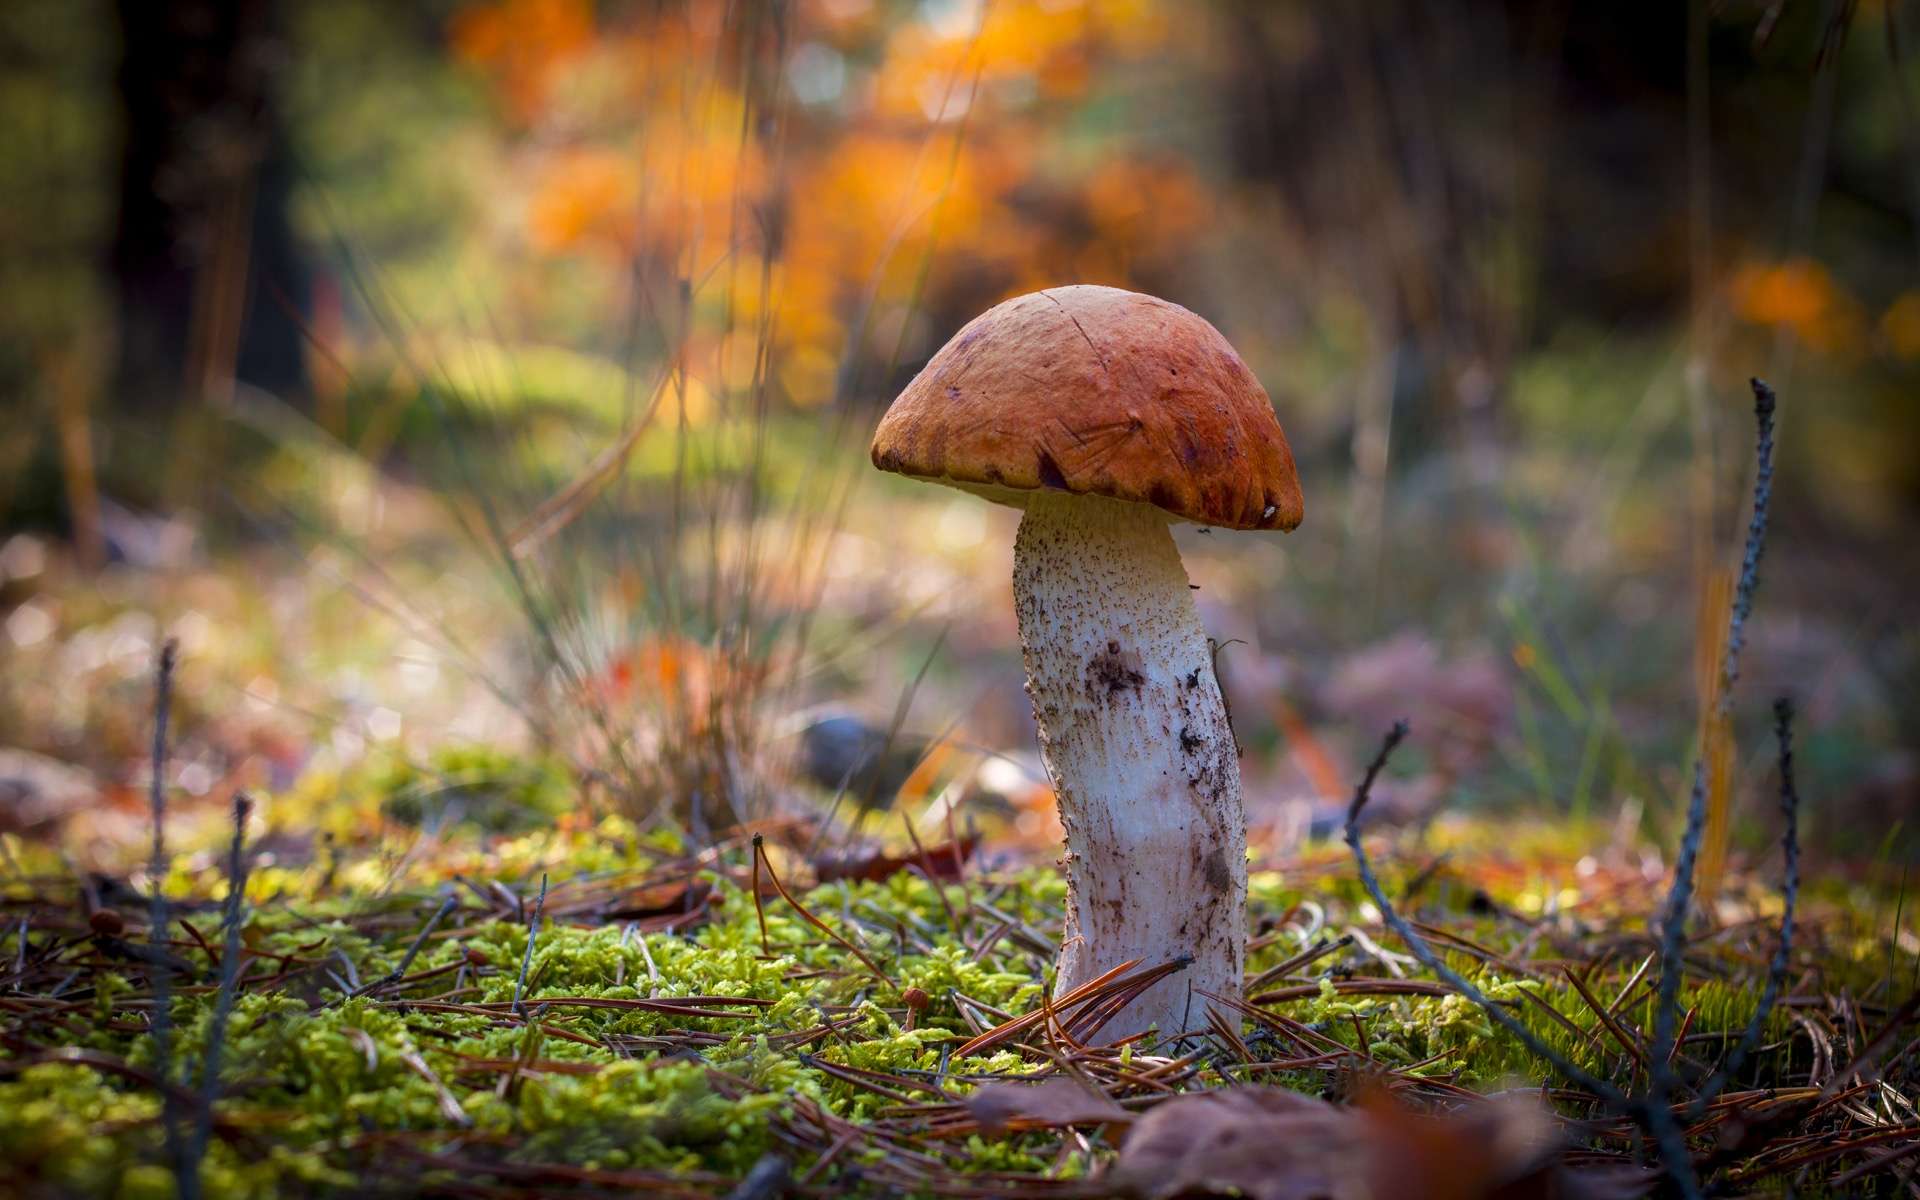 Les mycorhizes sont des champignons microscopiques qui favorisent le développement des arbres. © Romvo, Adobe Stock